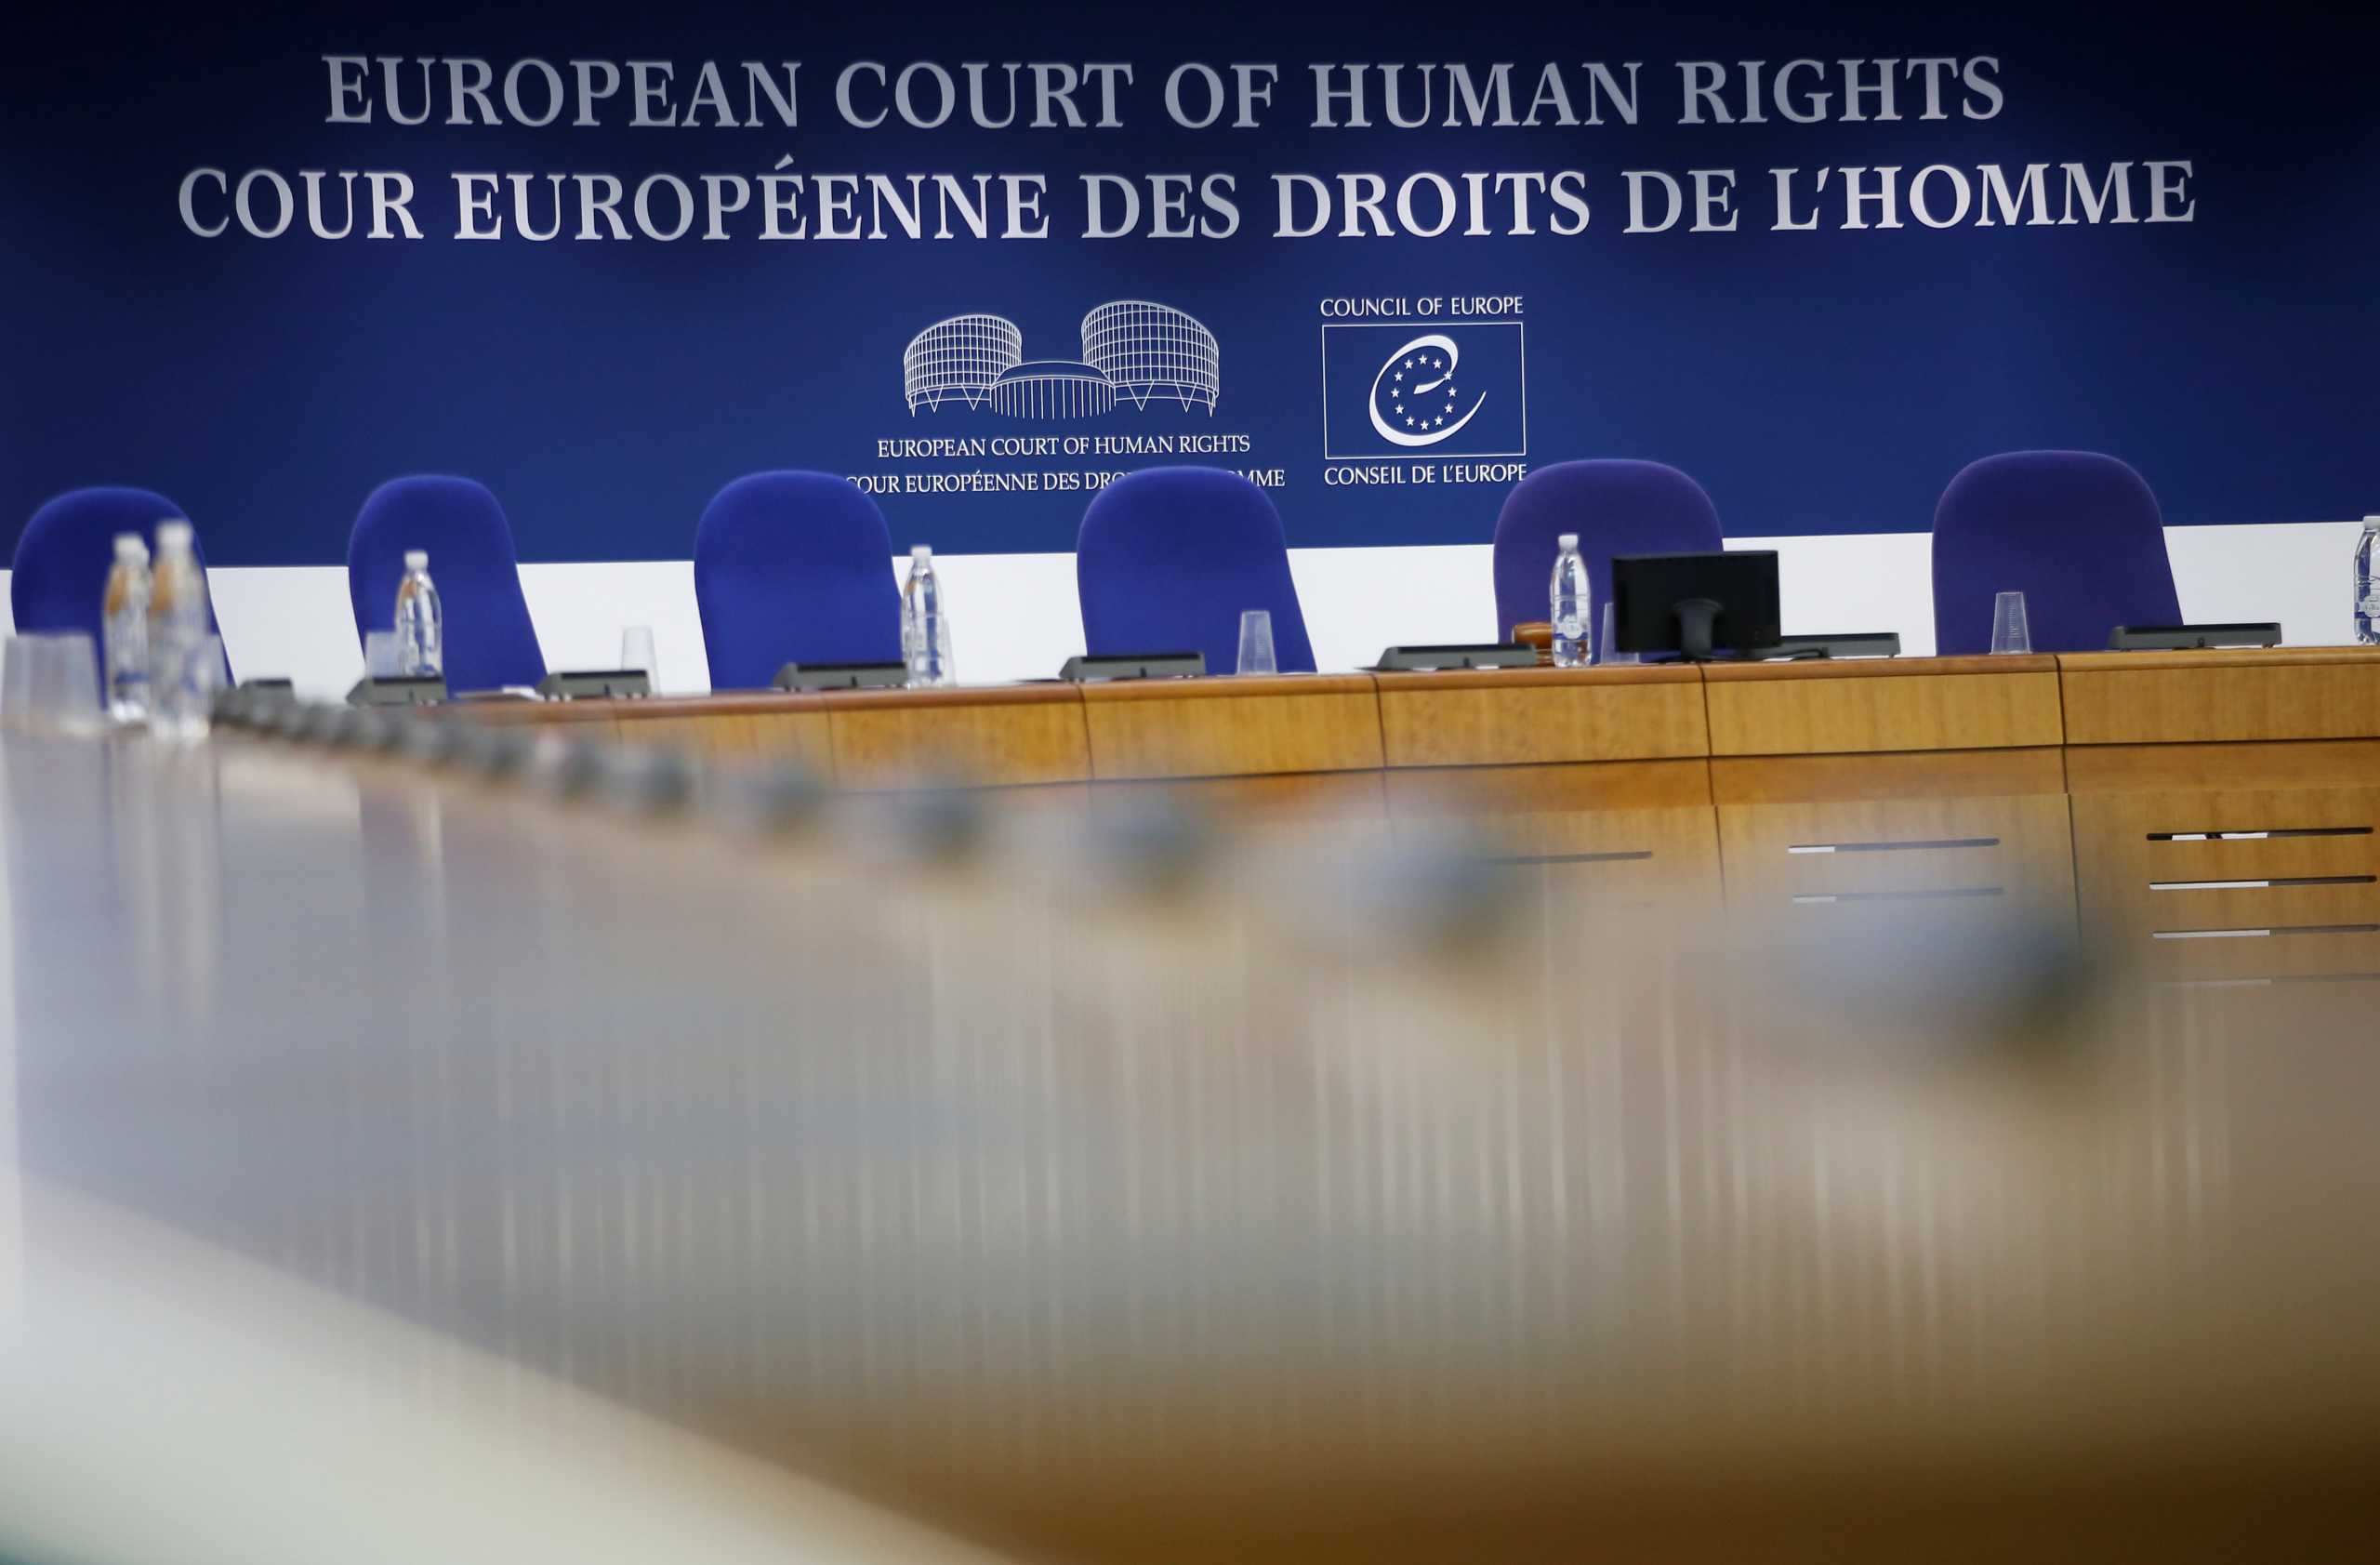 Τουρκία: Καταδικάστηκε από το Ευρωπαϊκό Δικαστήριο για τη στέρηση της ελευθερίας έκφρασης δύο κρατουμένων